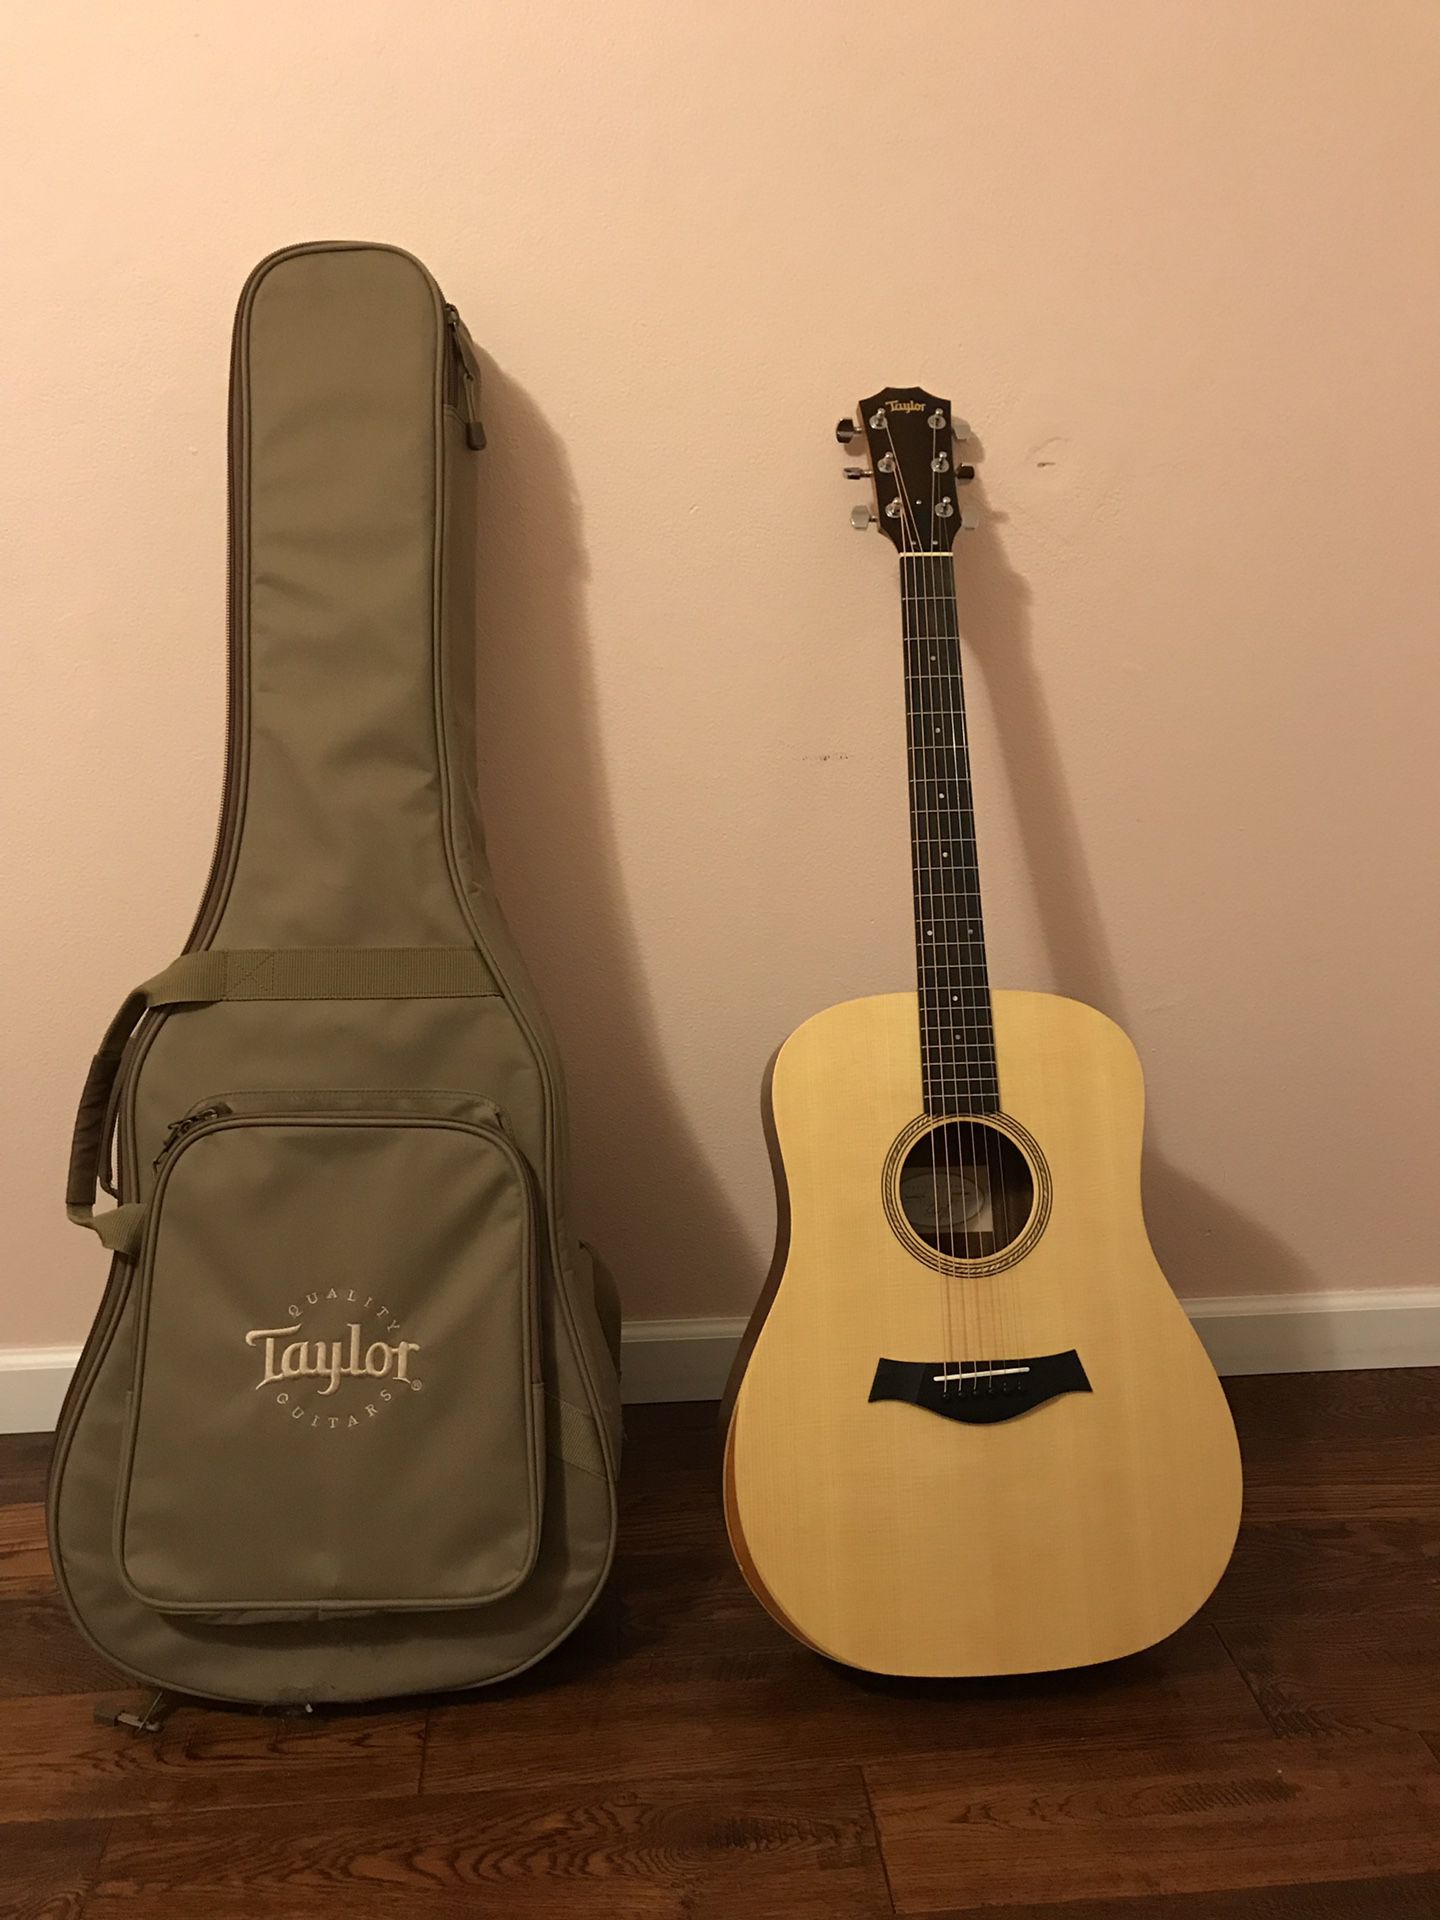 Taylor Academy 10 Guitar and Gig Bag - New